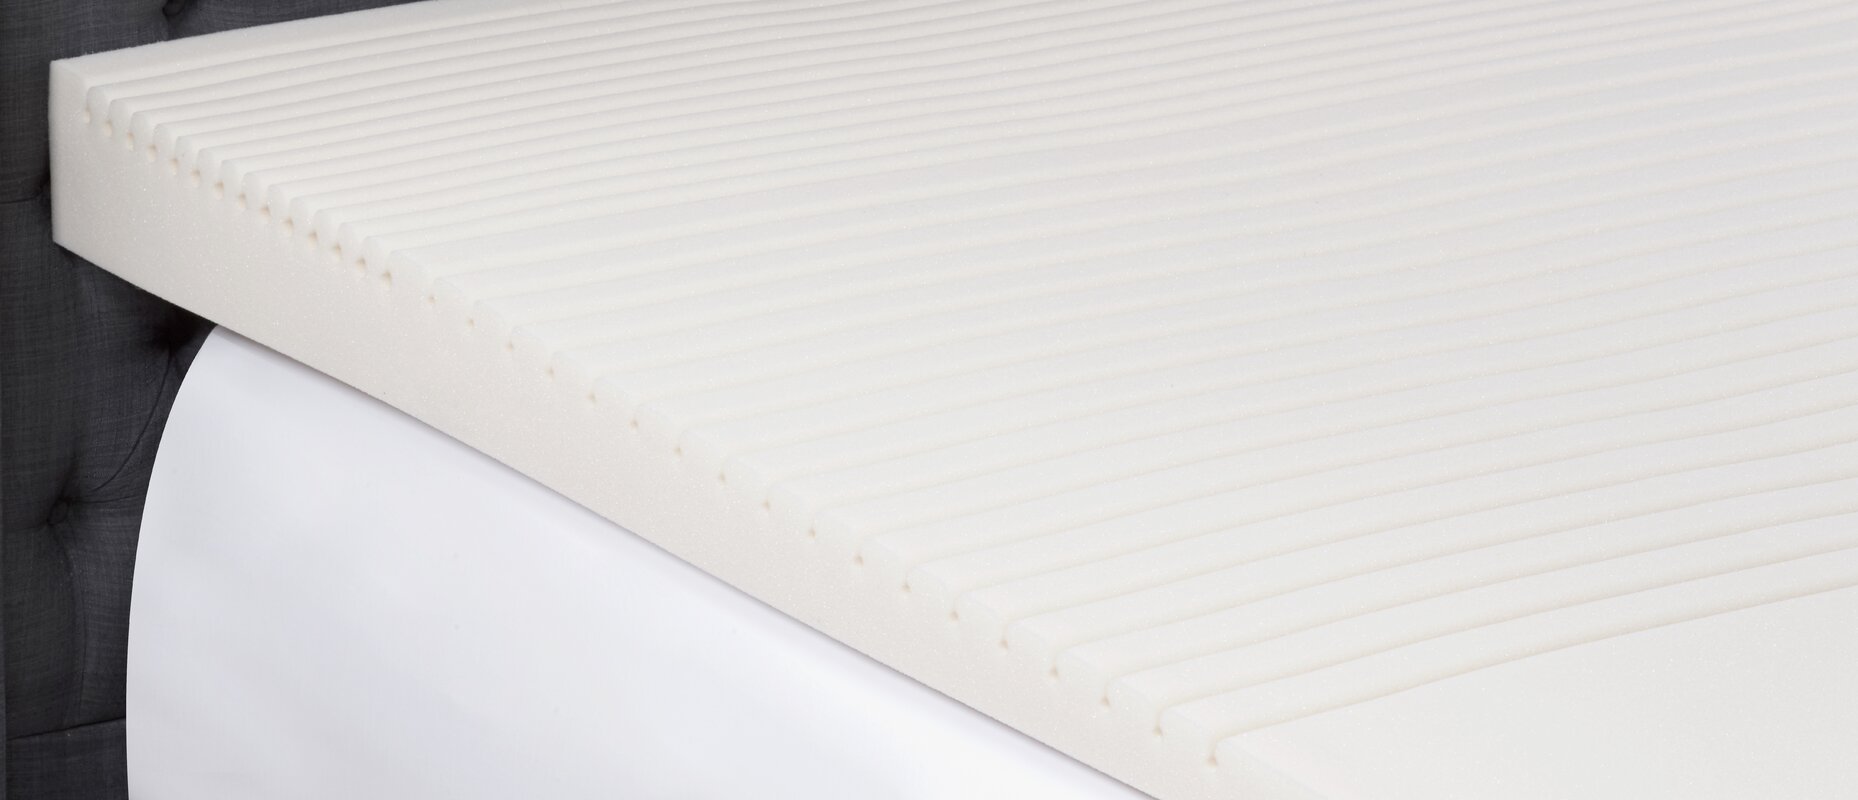 incline foam mattress pad